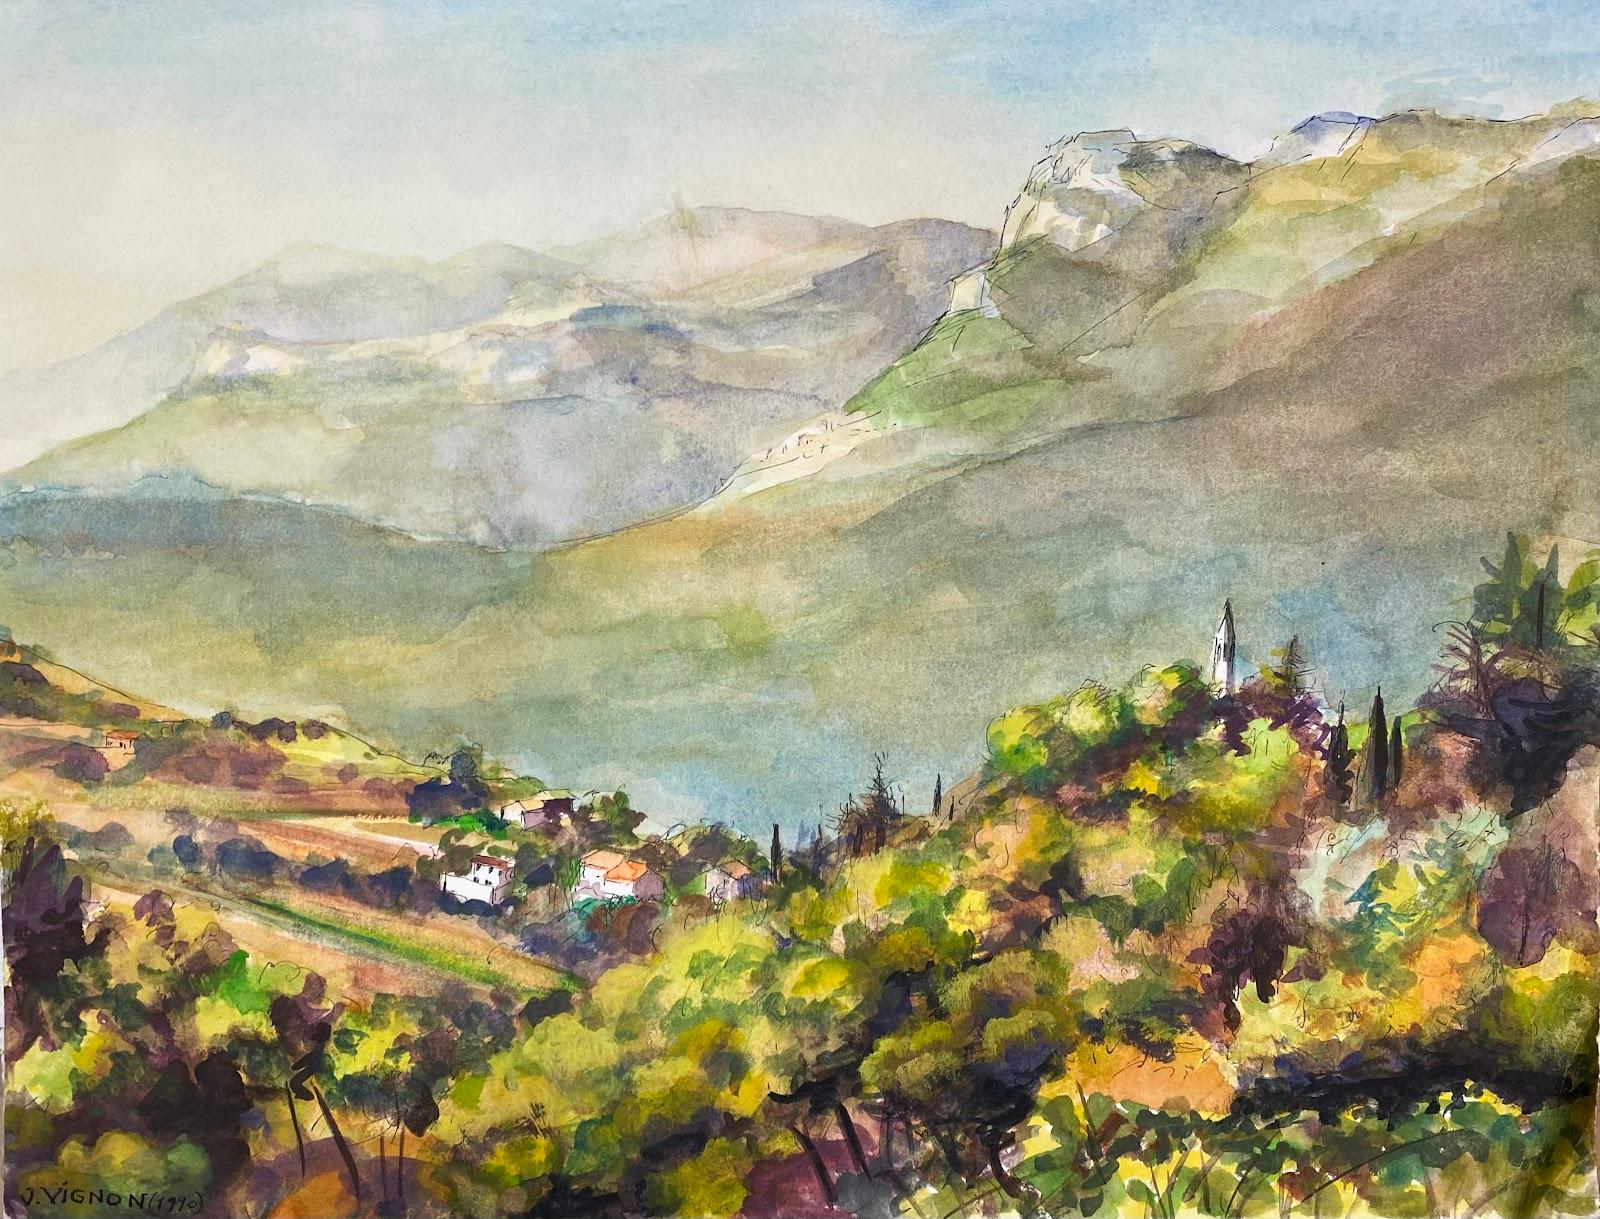 Josine Vignon Landscape Art - Post-Impressionist Watercolour Painting The Hills of Baou De Saint-Jeannet, Nice